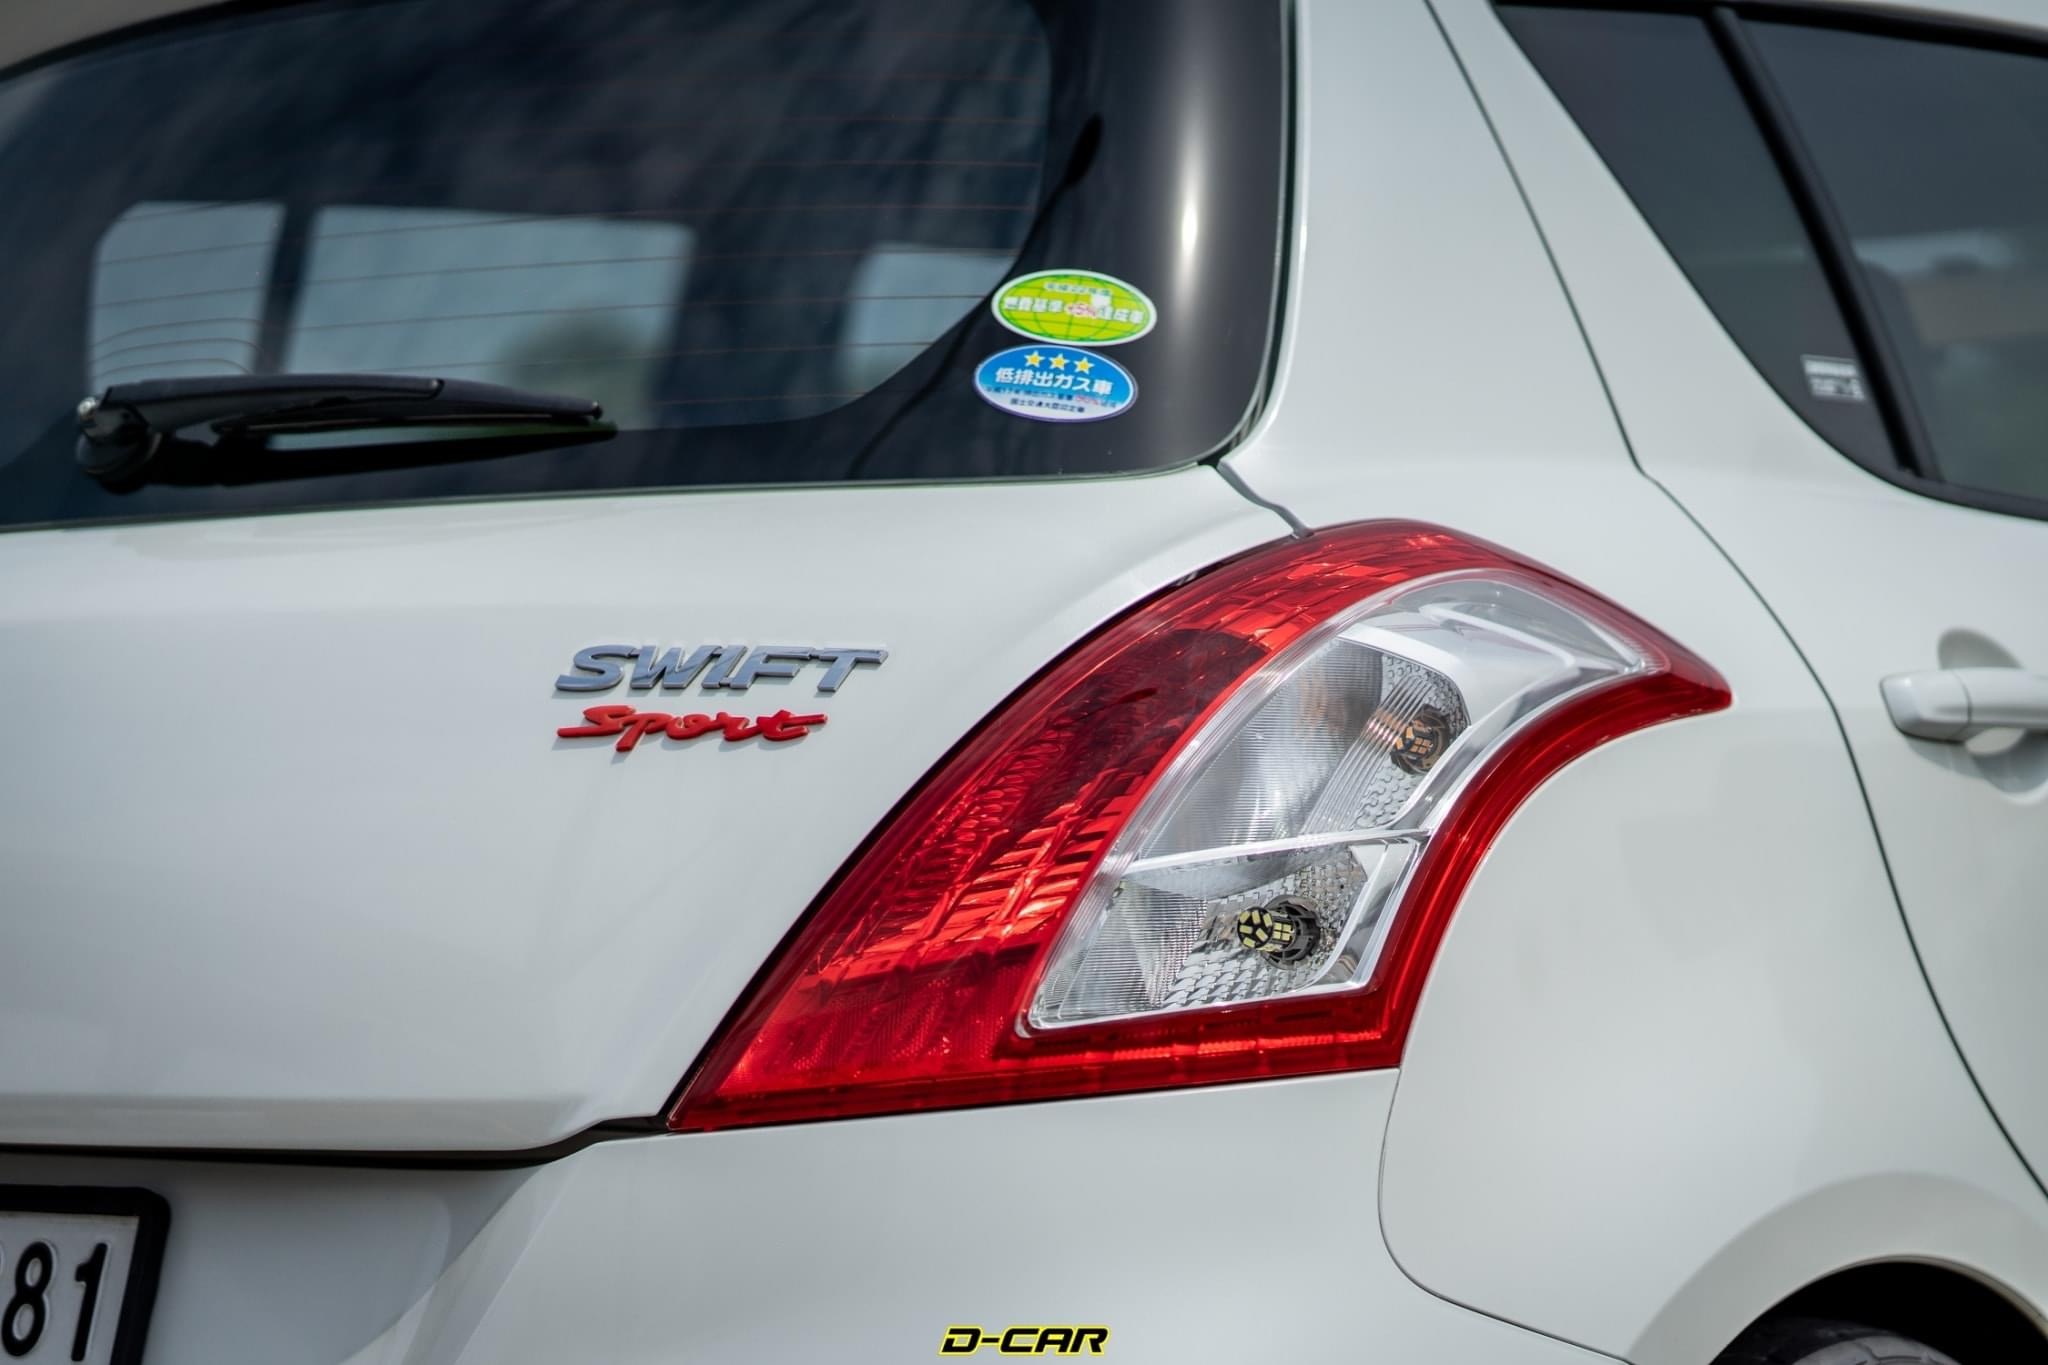 Suzuki Swift ปี 2013 สีขาว